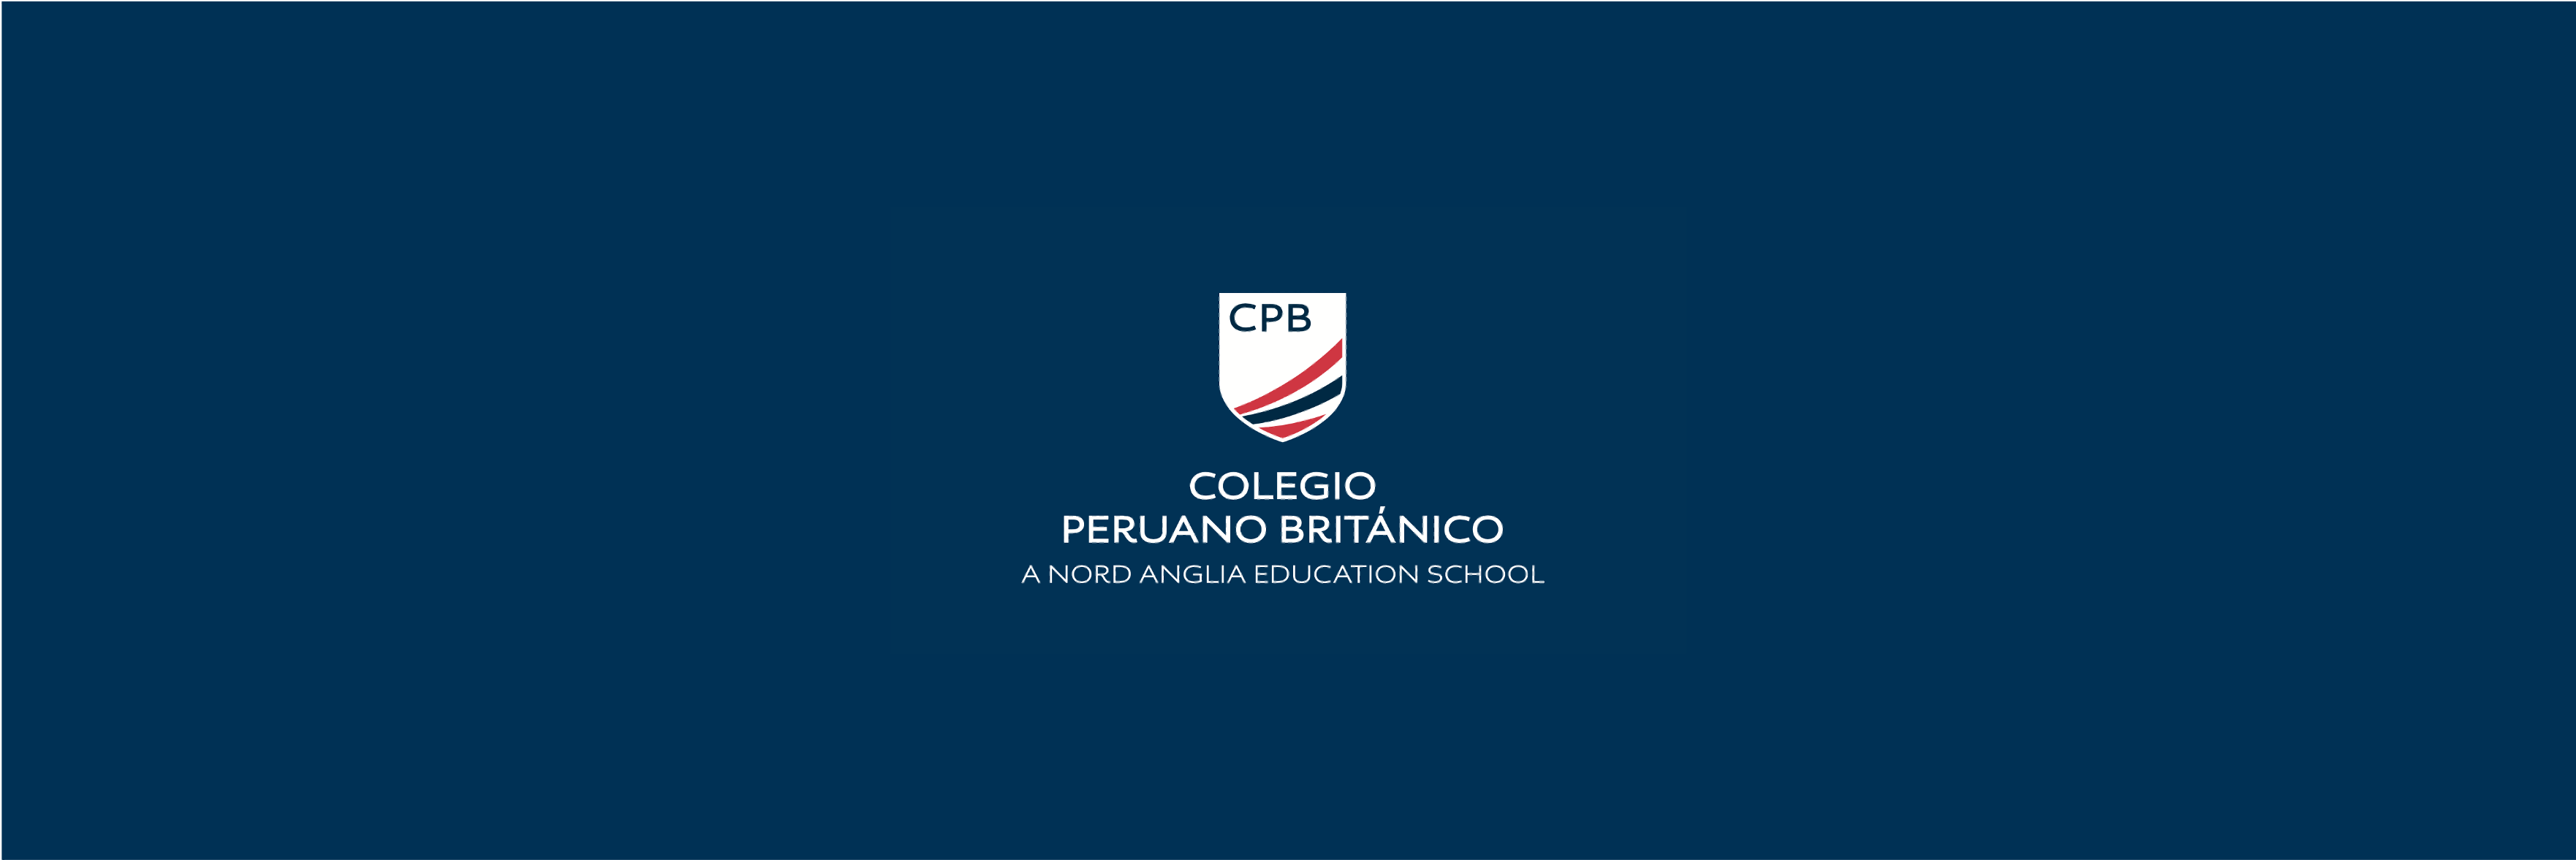 Requisitos y admisión | Colegio Peruano Británico - Content Page Header